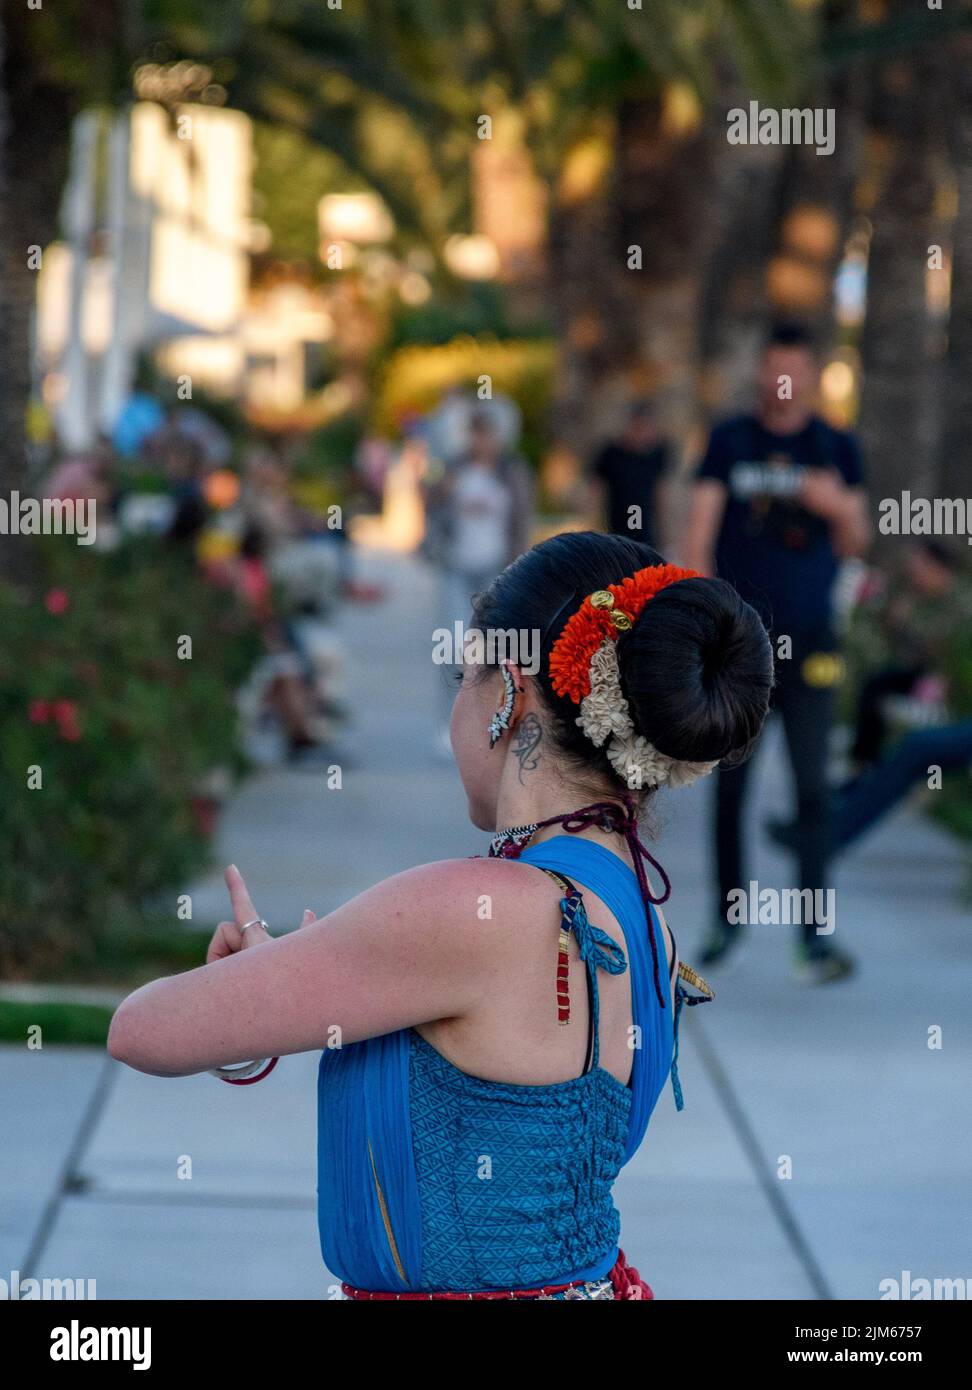 Un'artista di strada femminile esegue danza asiatica tradizionale con gesti a mano in luce del giorno con alberi verdi e persone sullo sfondo a Spalato, Croazia Foto Stock